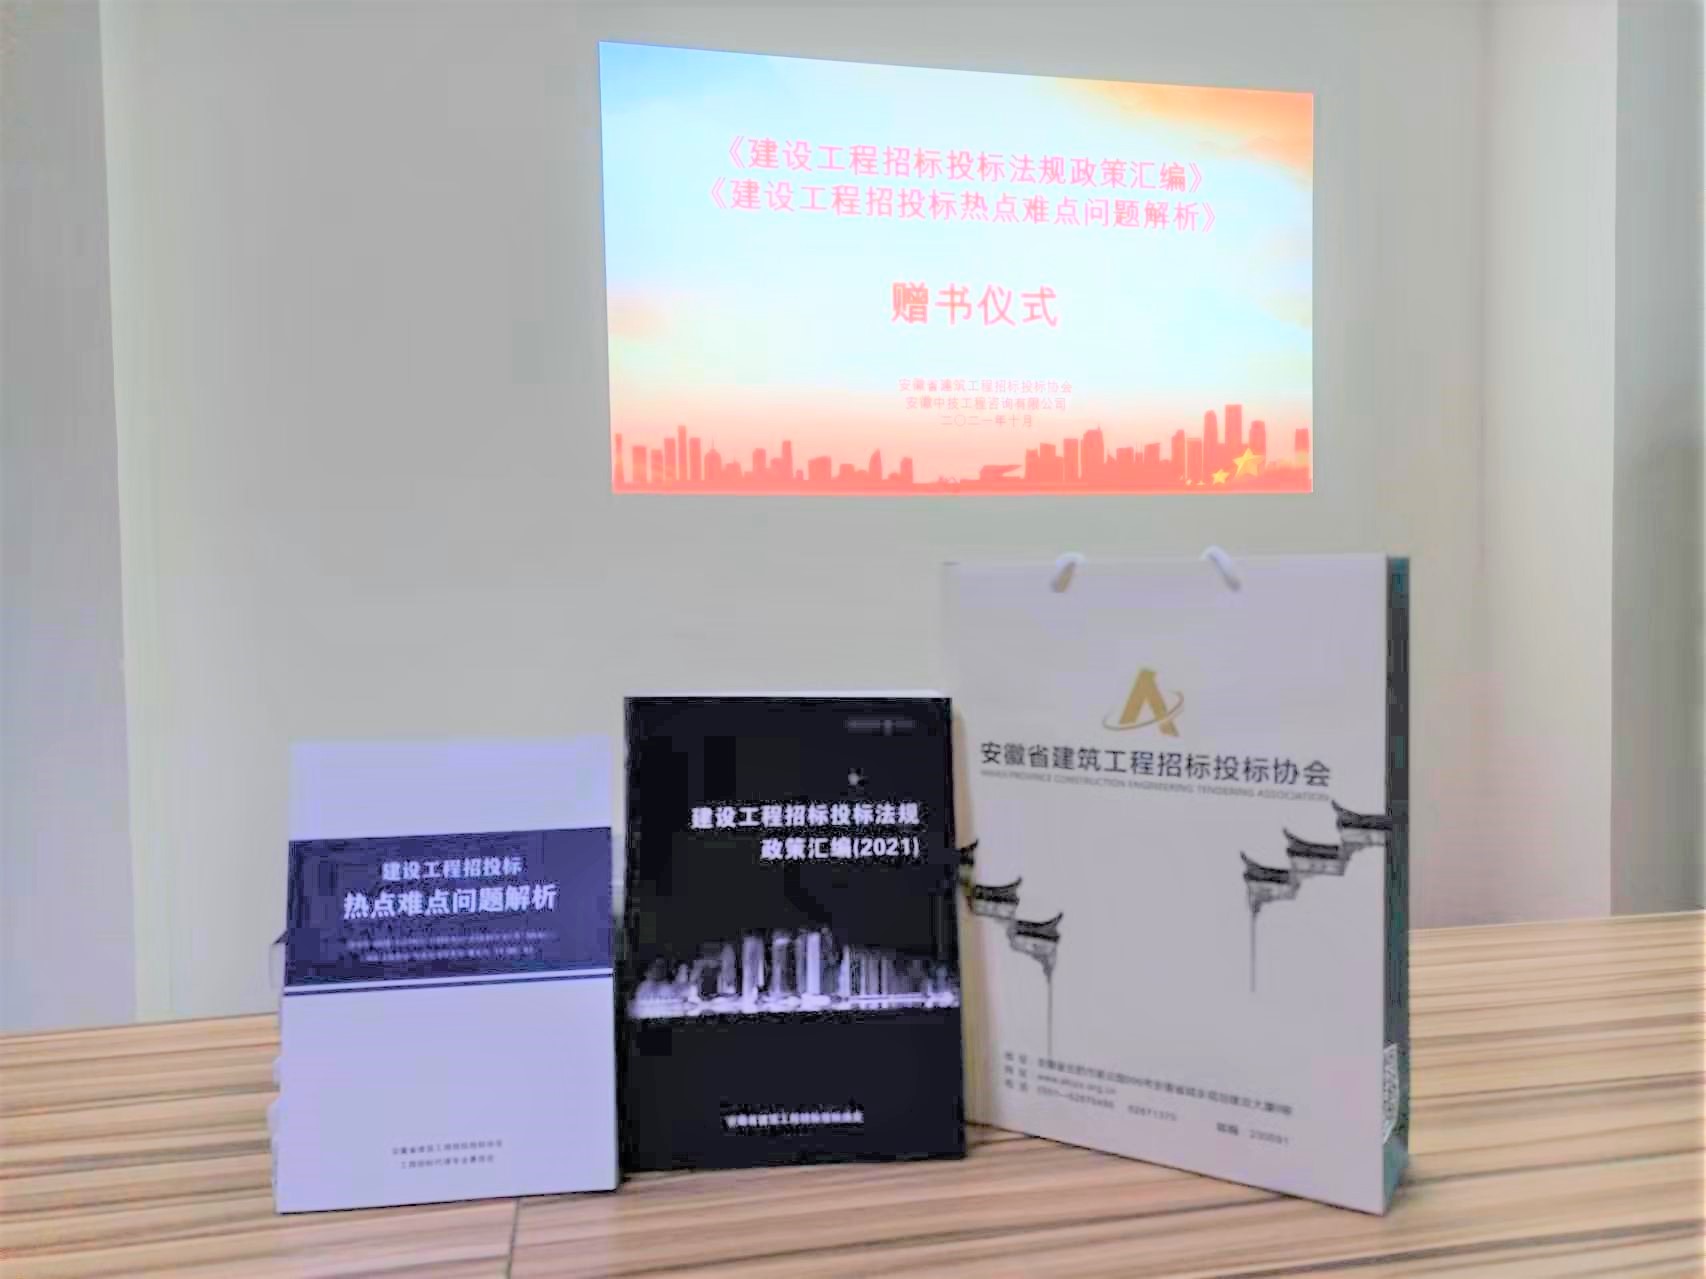 安徽省建筑工程招标投标协会领导莅临我司赠送专业书籍